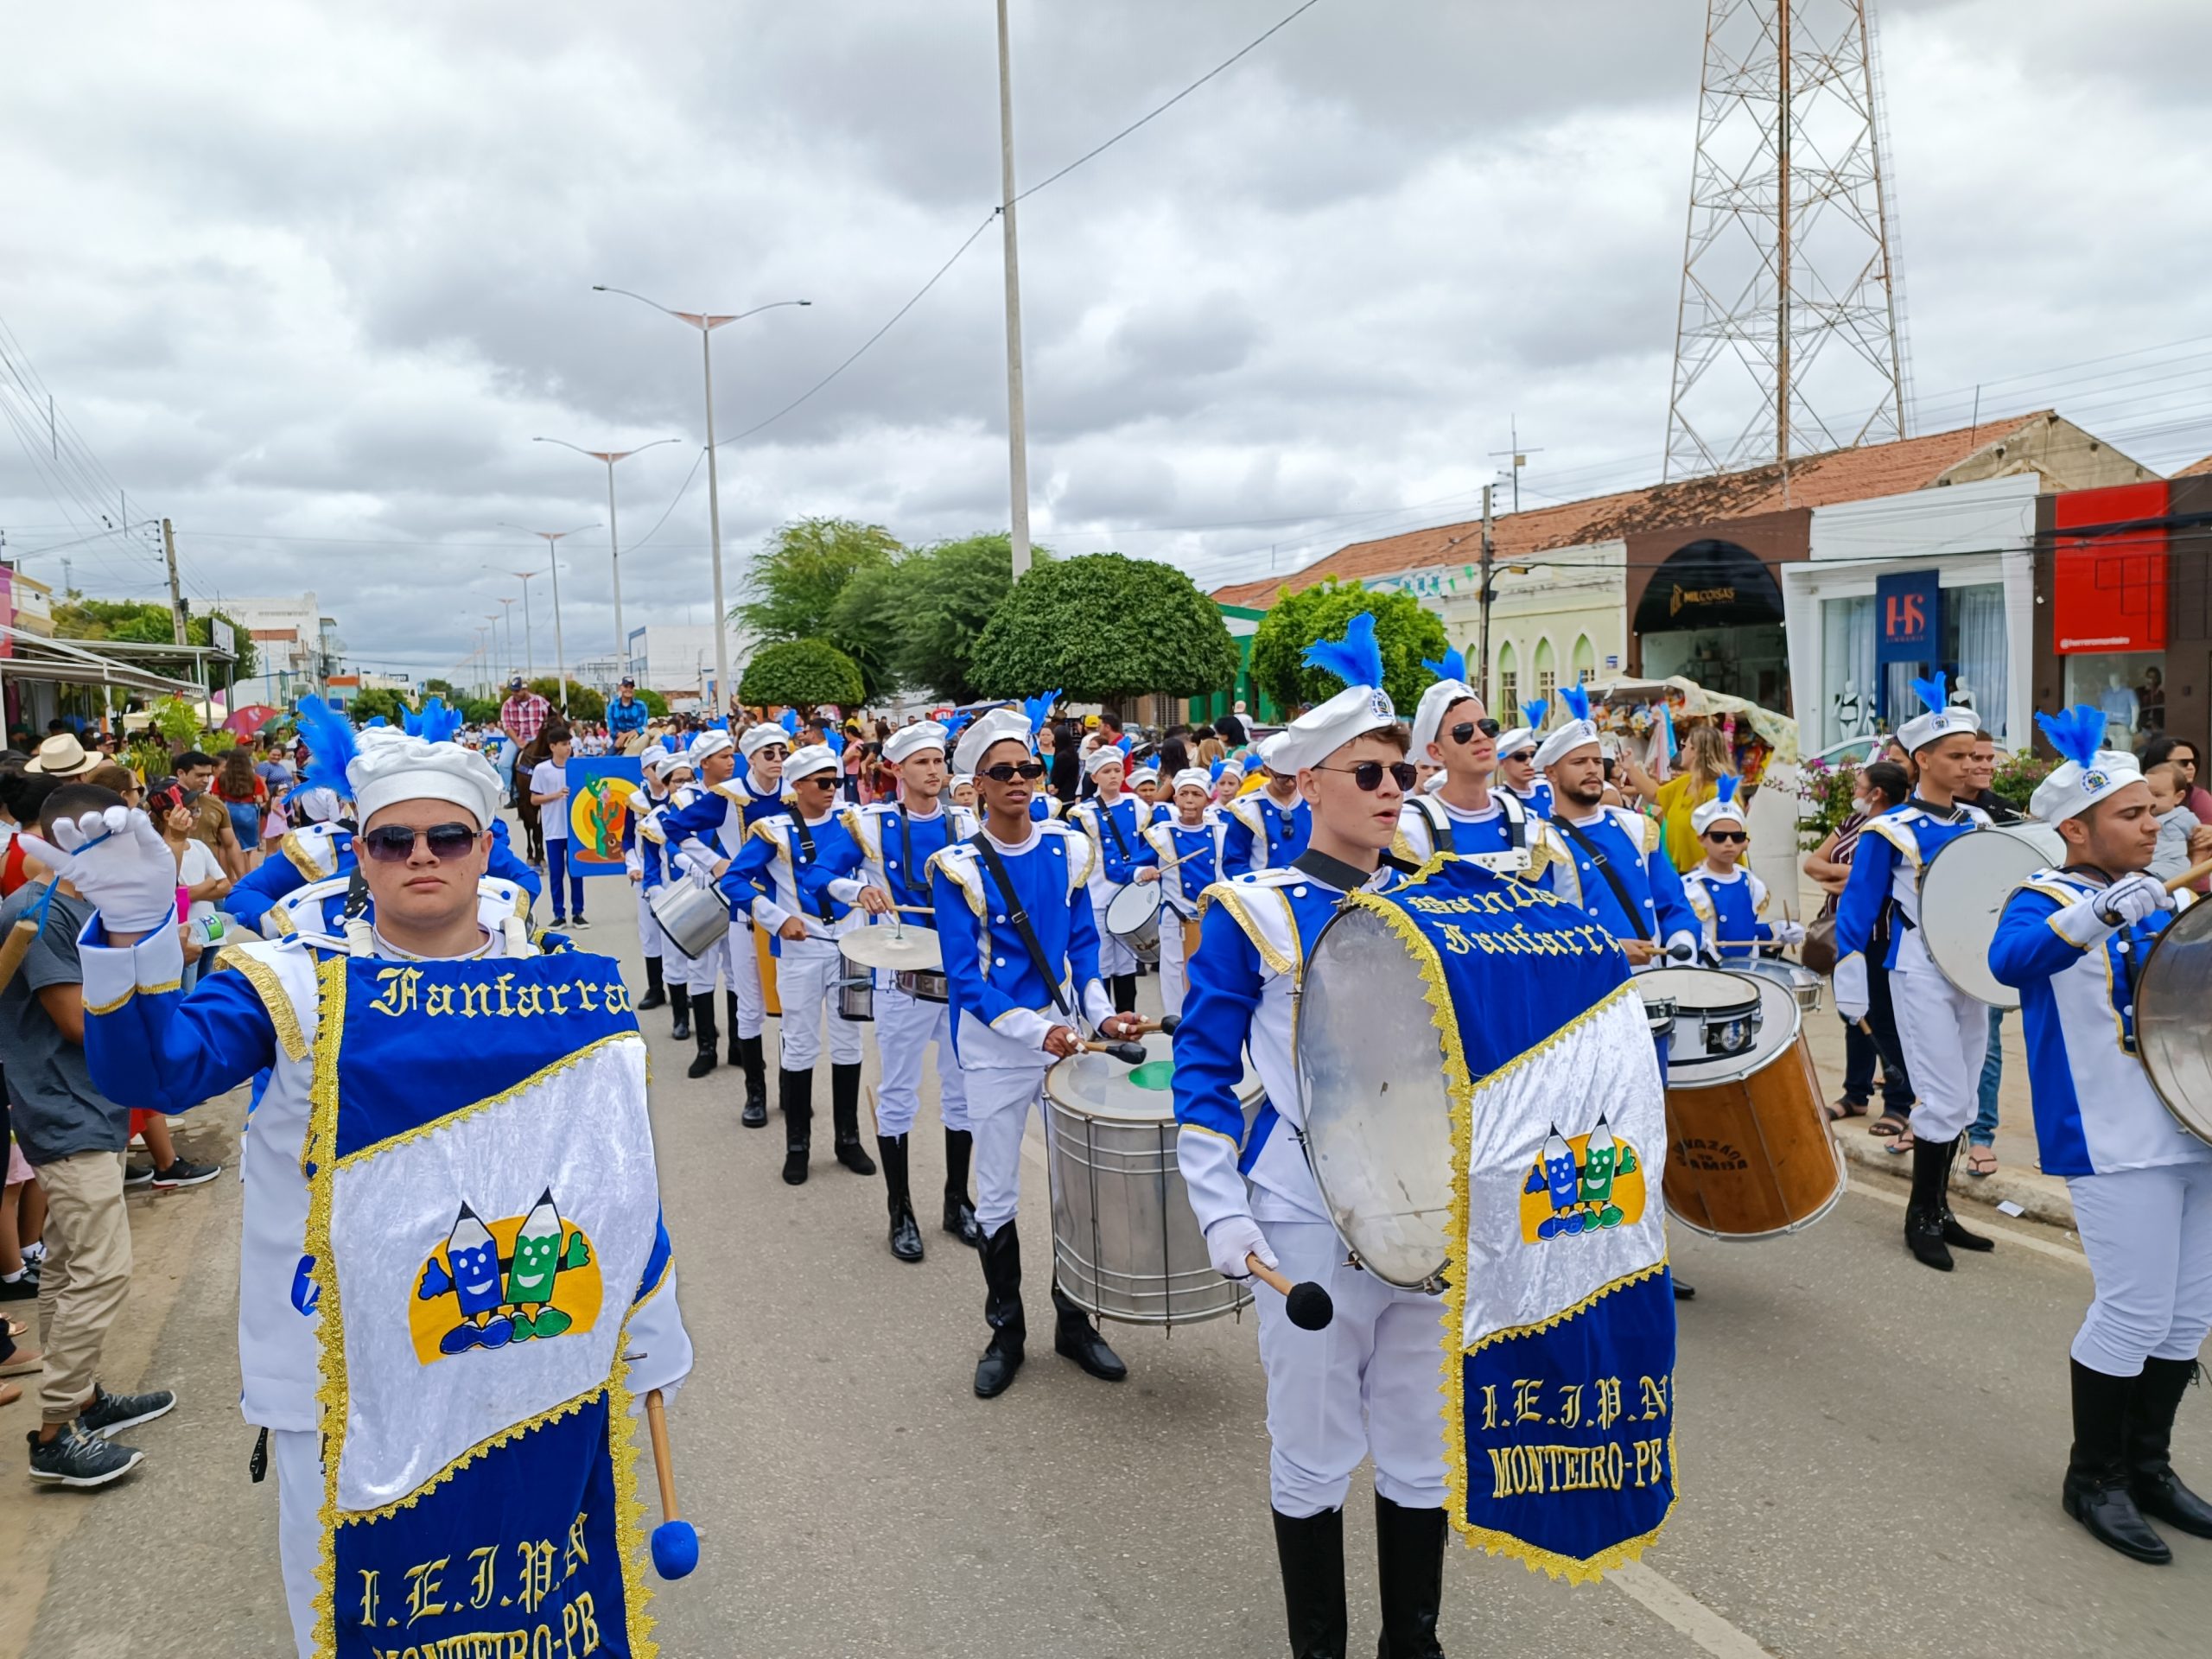 IMG_20220907_093304-scaled Confira imagens do desfile cívico da Independência na manhã desta quarta-feira em Monteiro